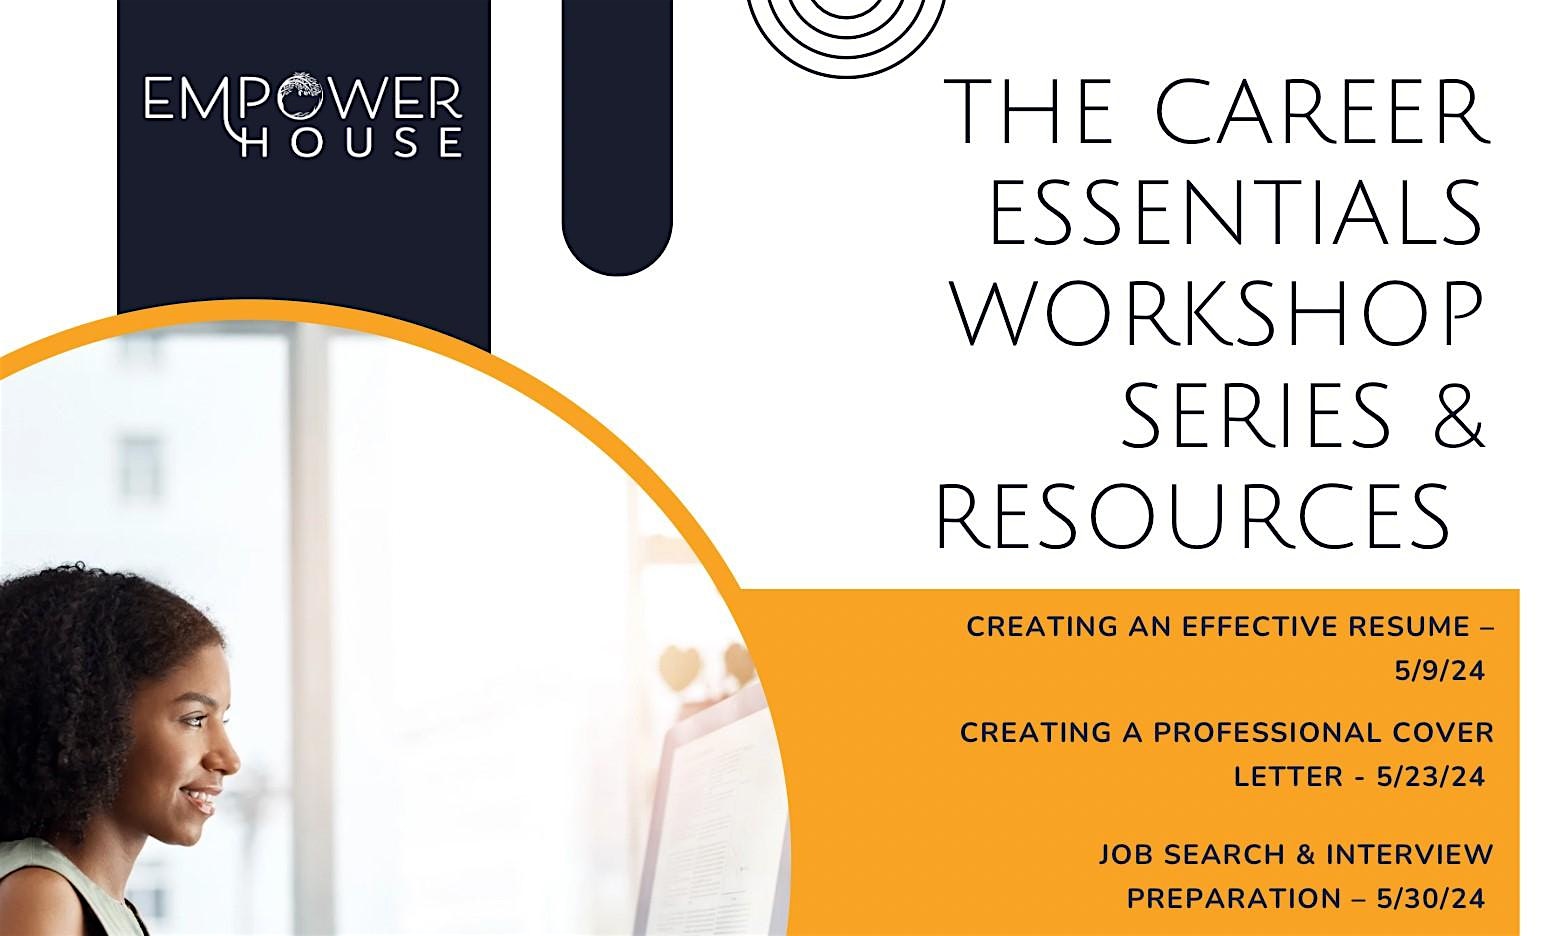 THE CAREER ESSENTIALS WORKSHOP SERIES - WEEK 3 JOB SEARCH & INTERVIEW PREP